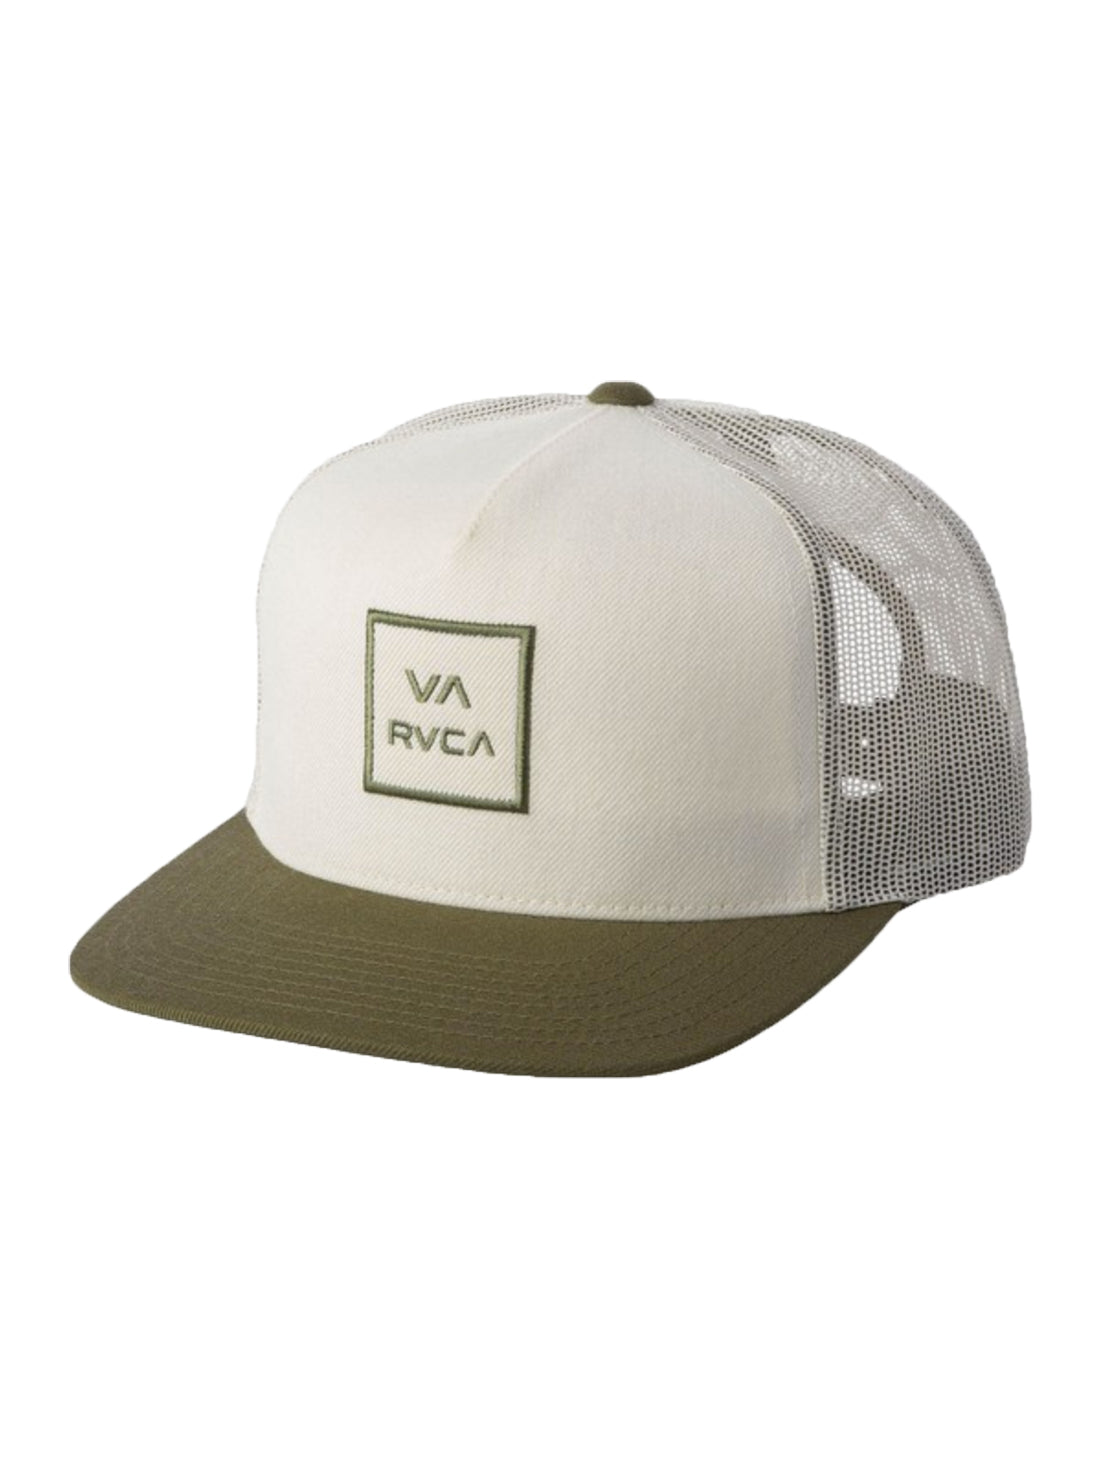 RVCA VA All The Way Trucker Hat CRE-Cream OS